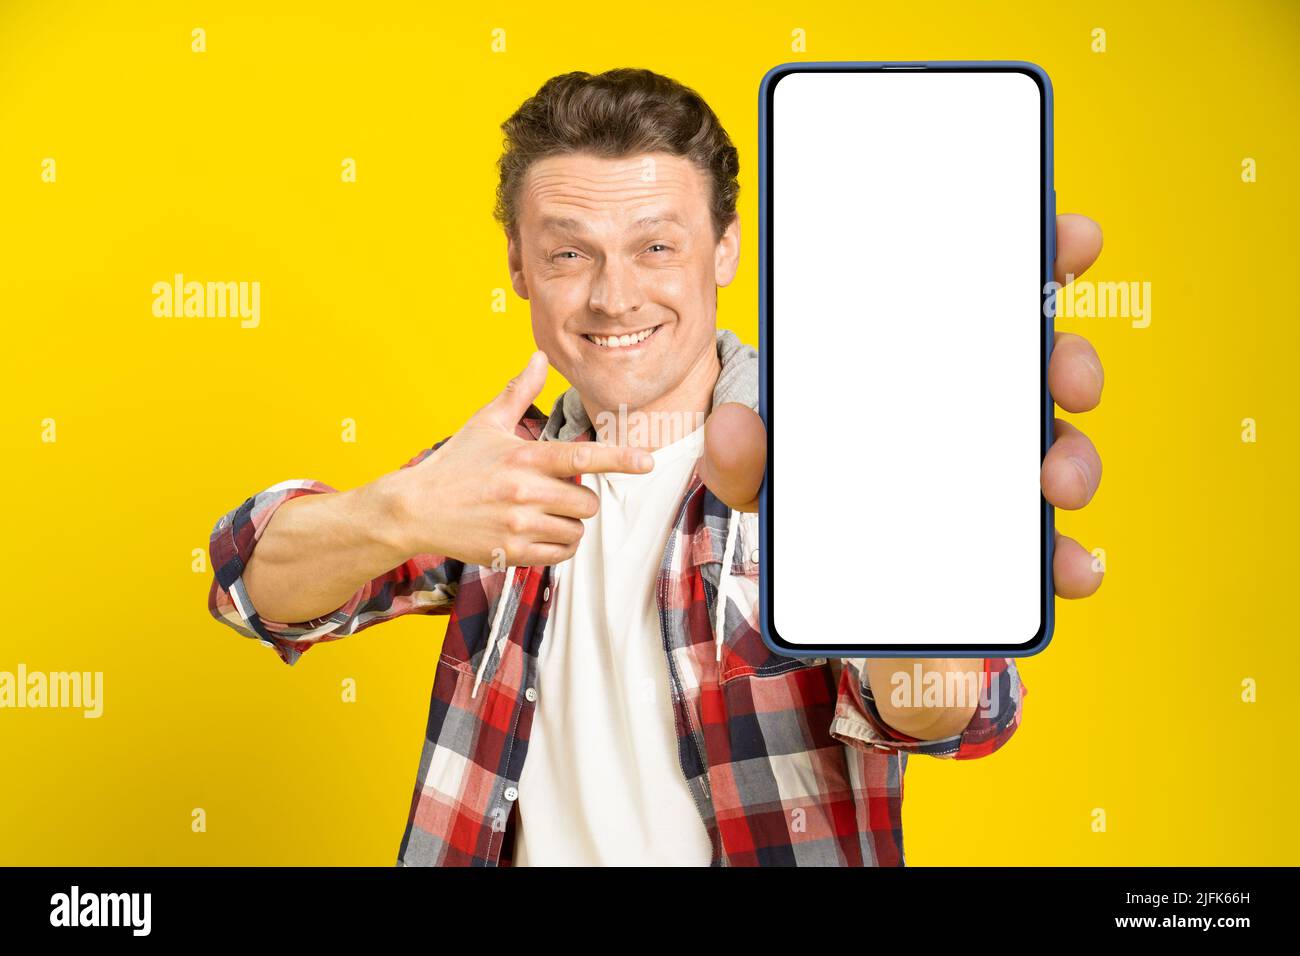 Charmant homme heureux pointant vers un smartphone avec écran blanc vide, portant une chemise à carreaux rouge et un Jean écran de téléphone portable maquette isolée sur fond jaune. Publicité pour applications mobiles. Banque D'Images